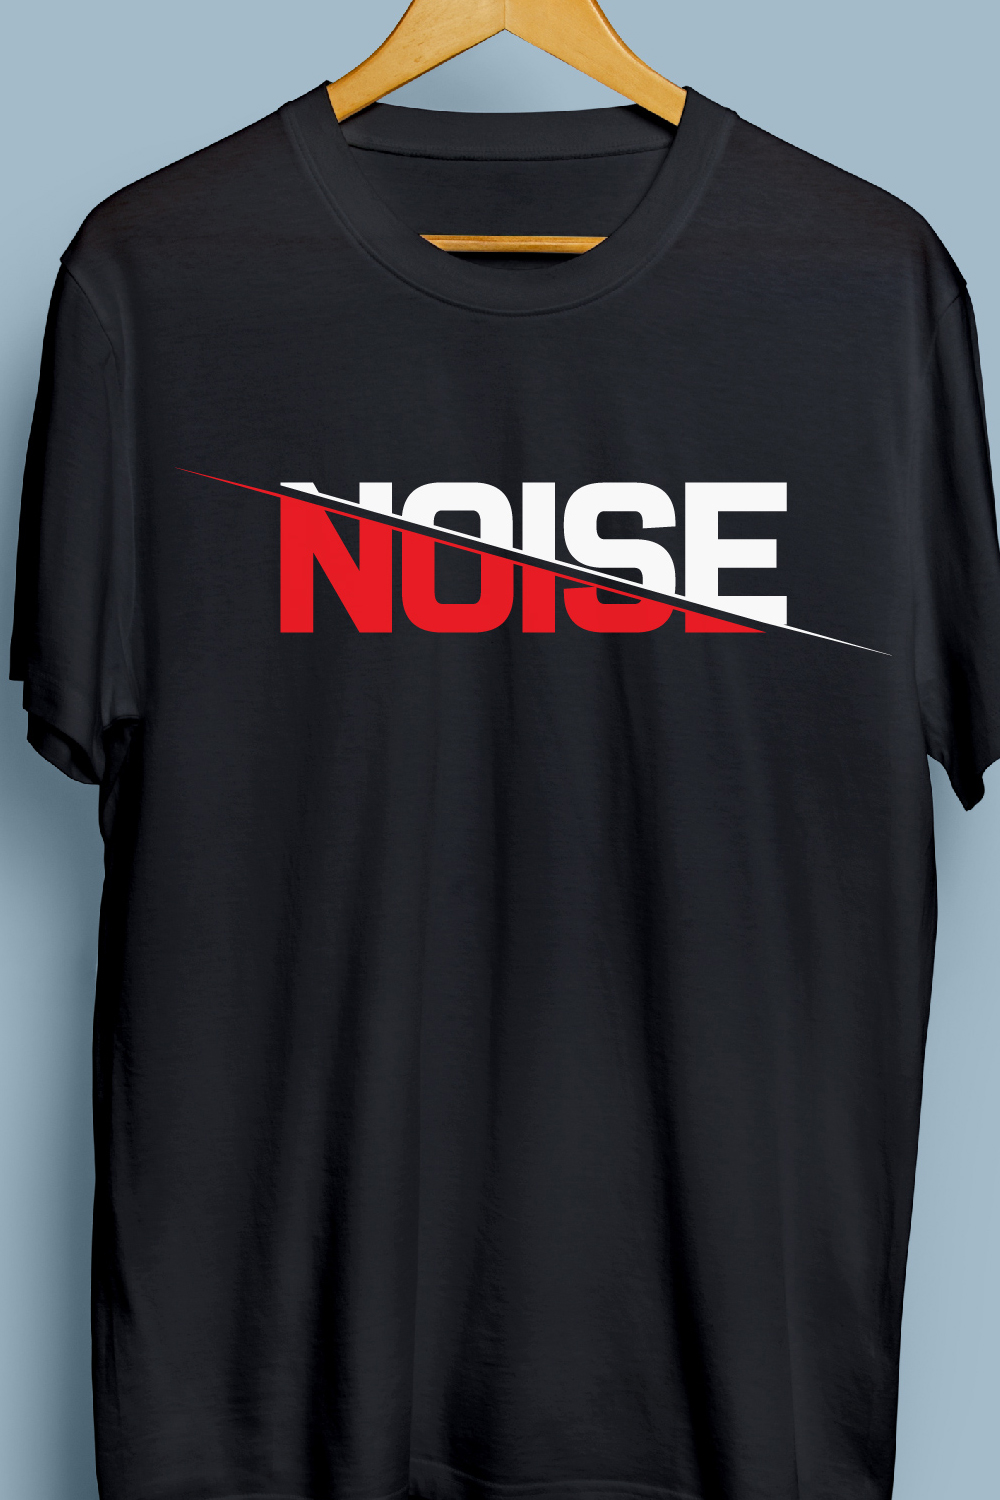 Noise t shirt design pinterest preview image.